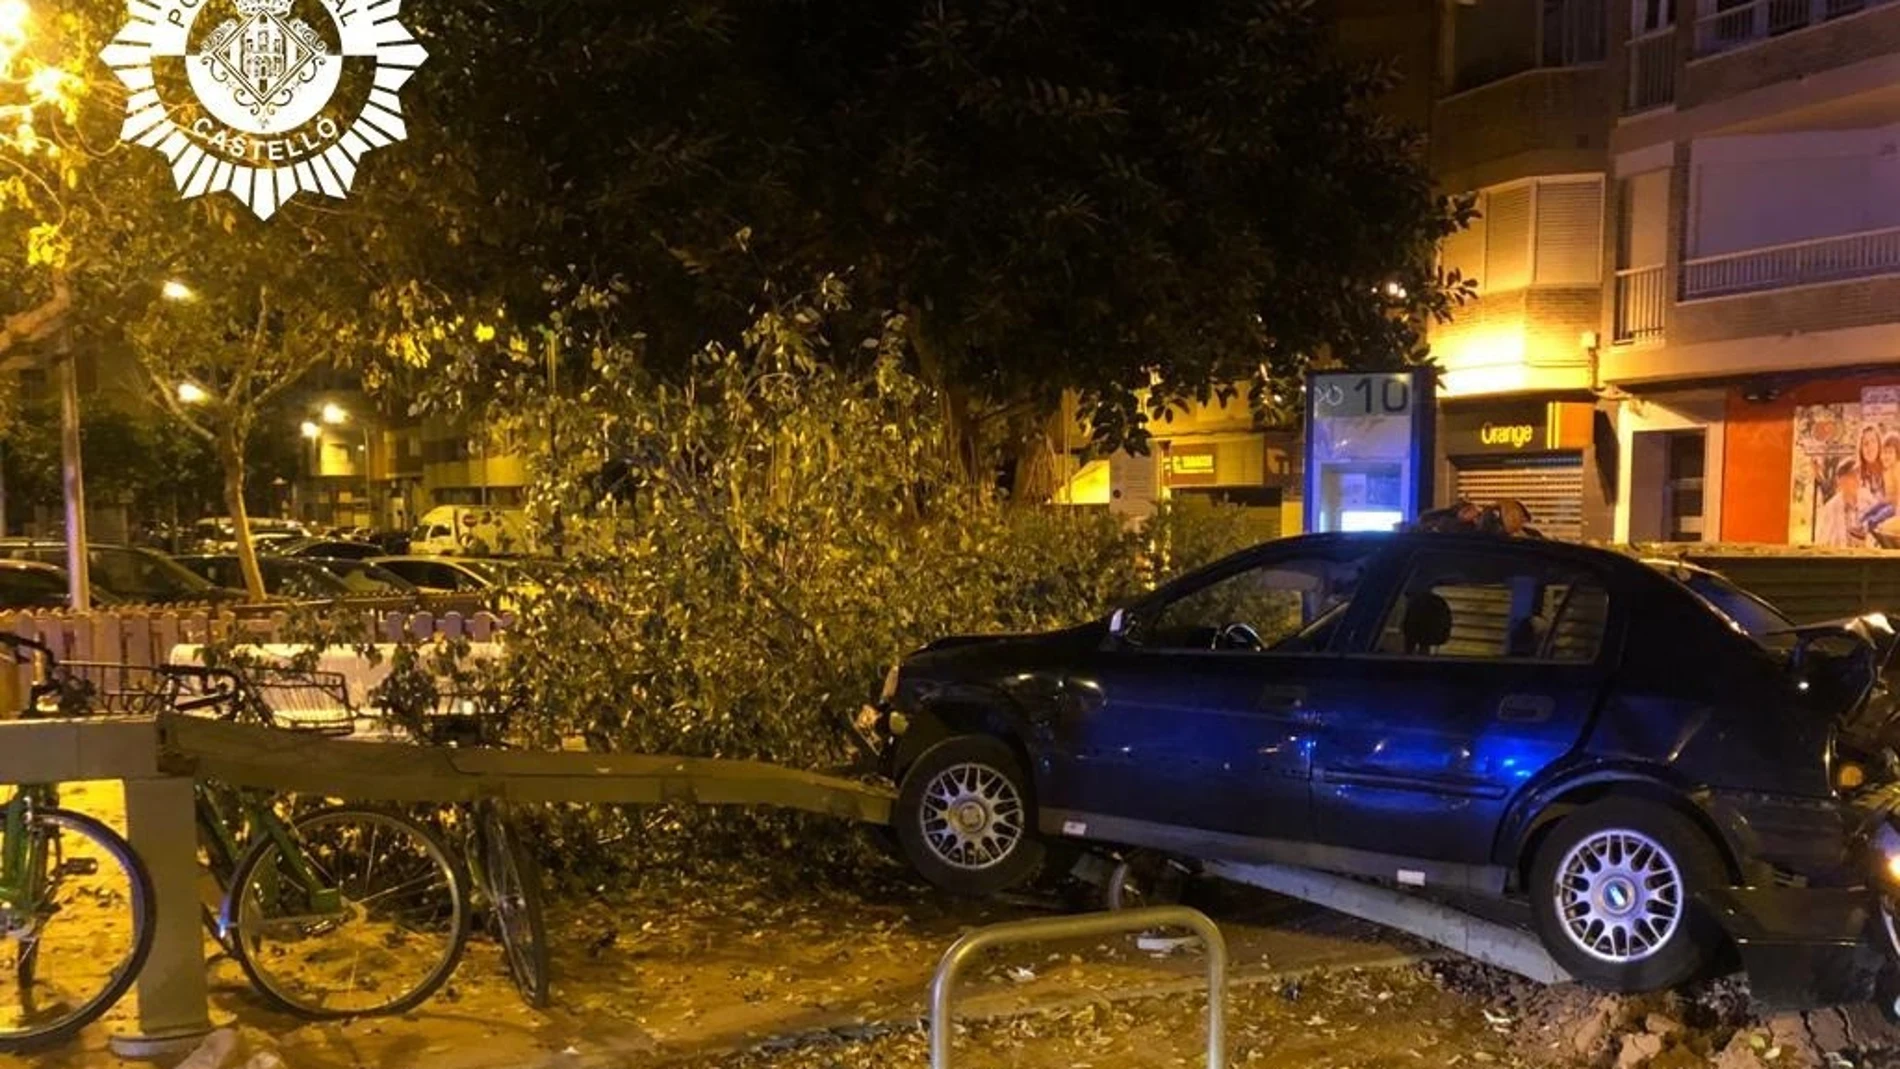 El vehículo se empotró contra un árbol, una estación de bicis y el coche patrulla que le perseguía